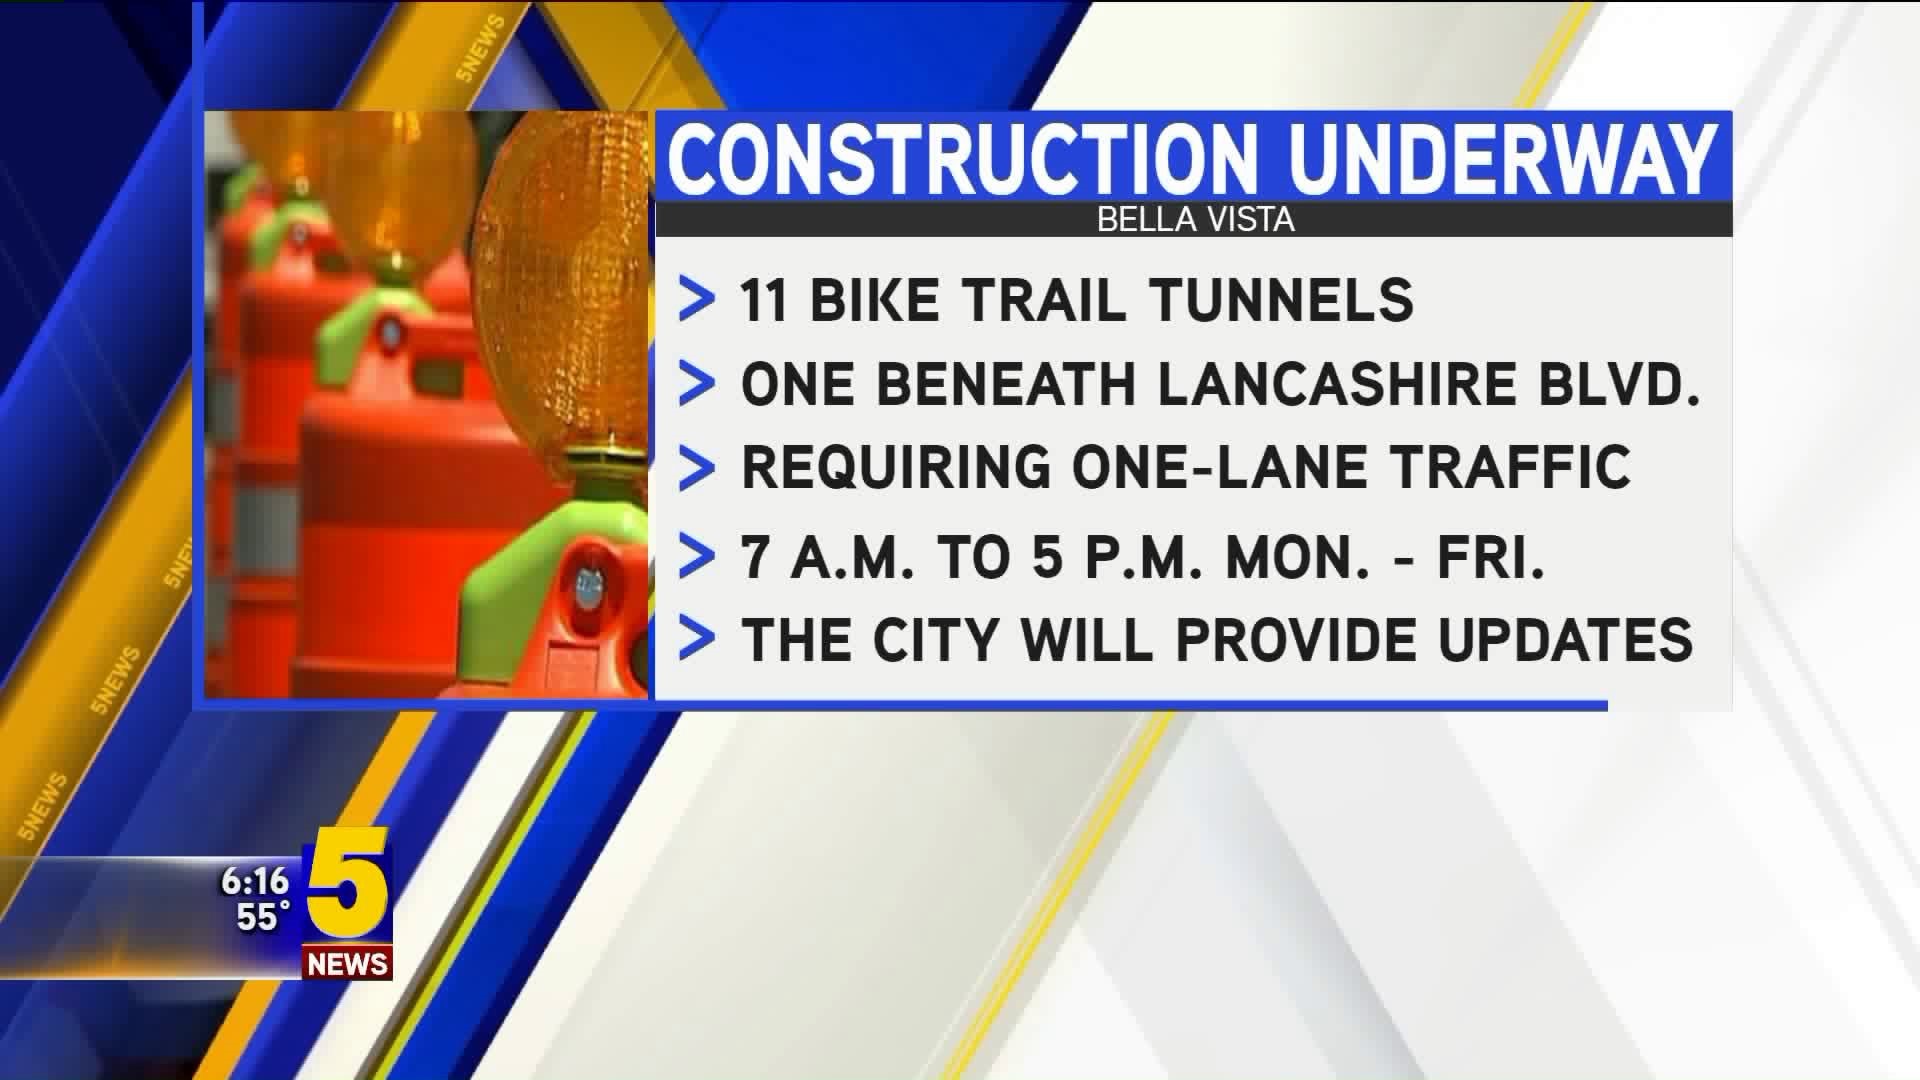 Construction Underway for 11 Bike Trails